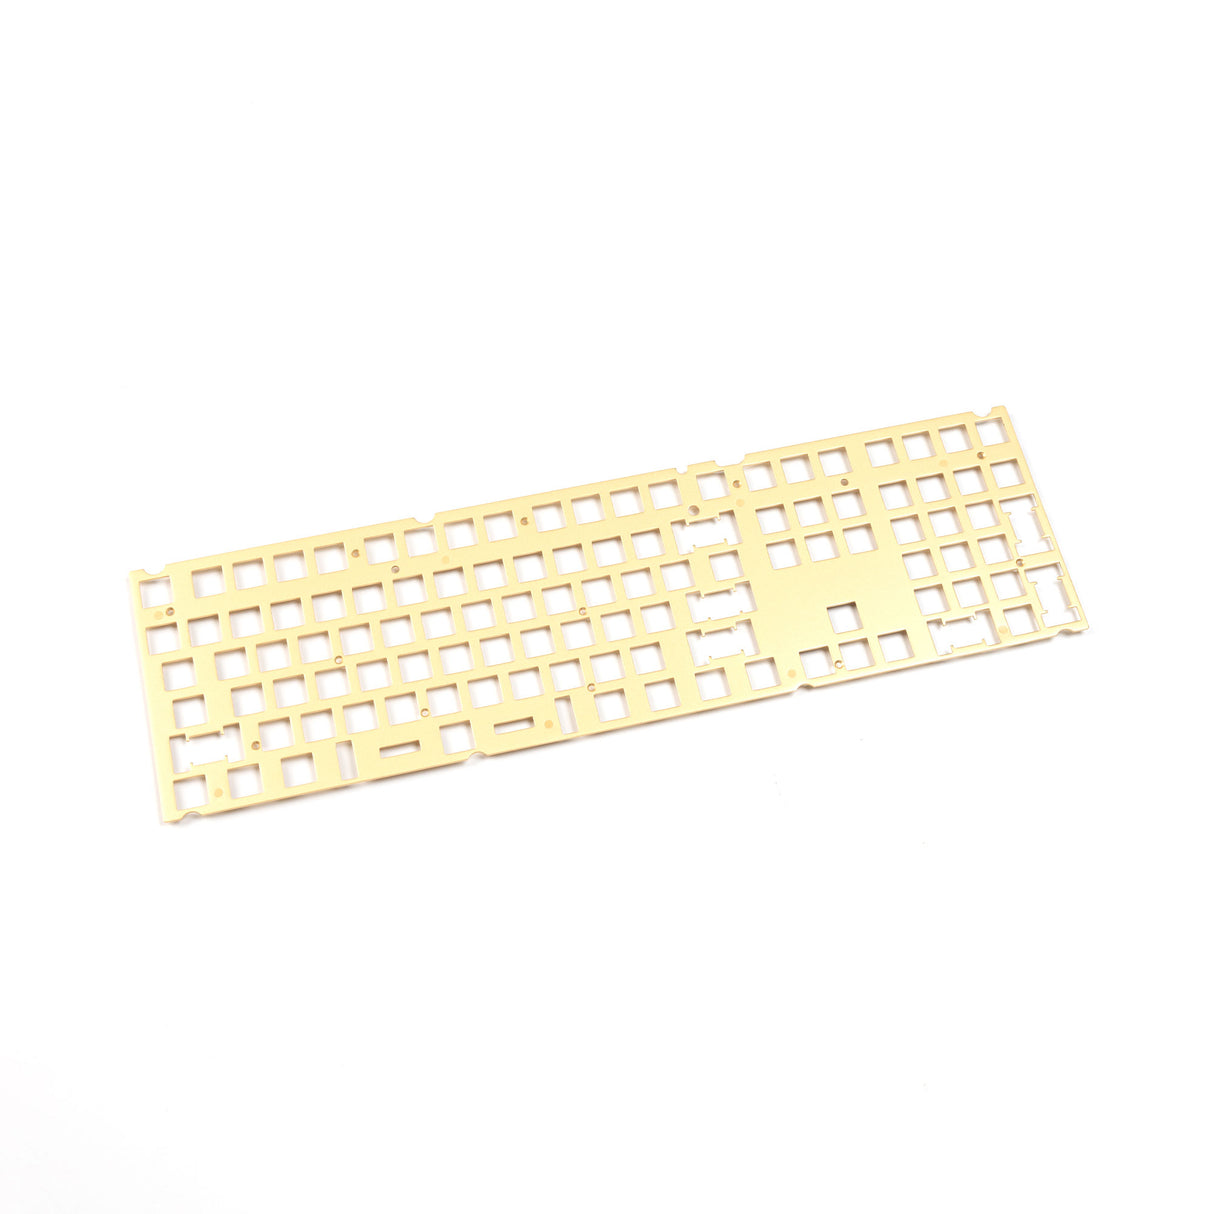 Keychron V6 Keyboard ANSI Layout Knob Brass Plate